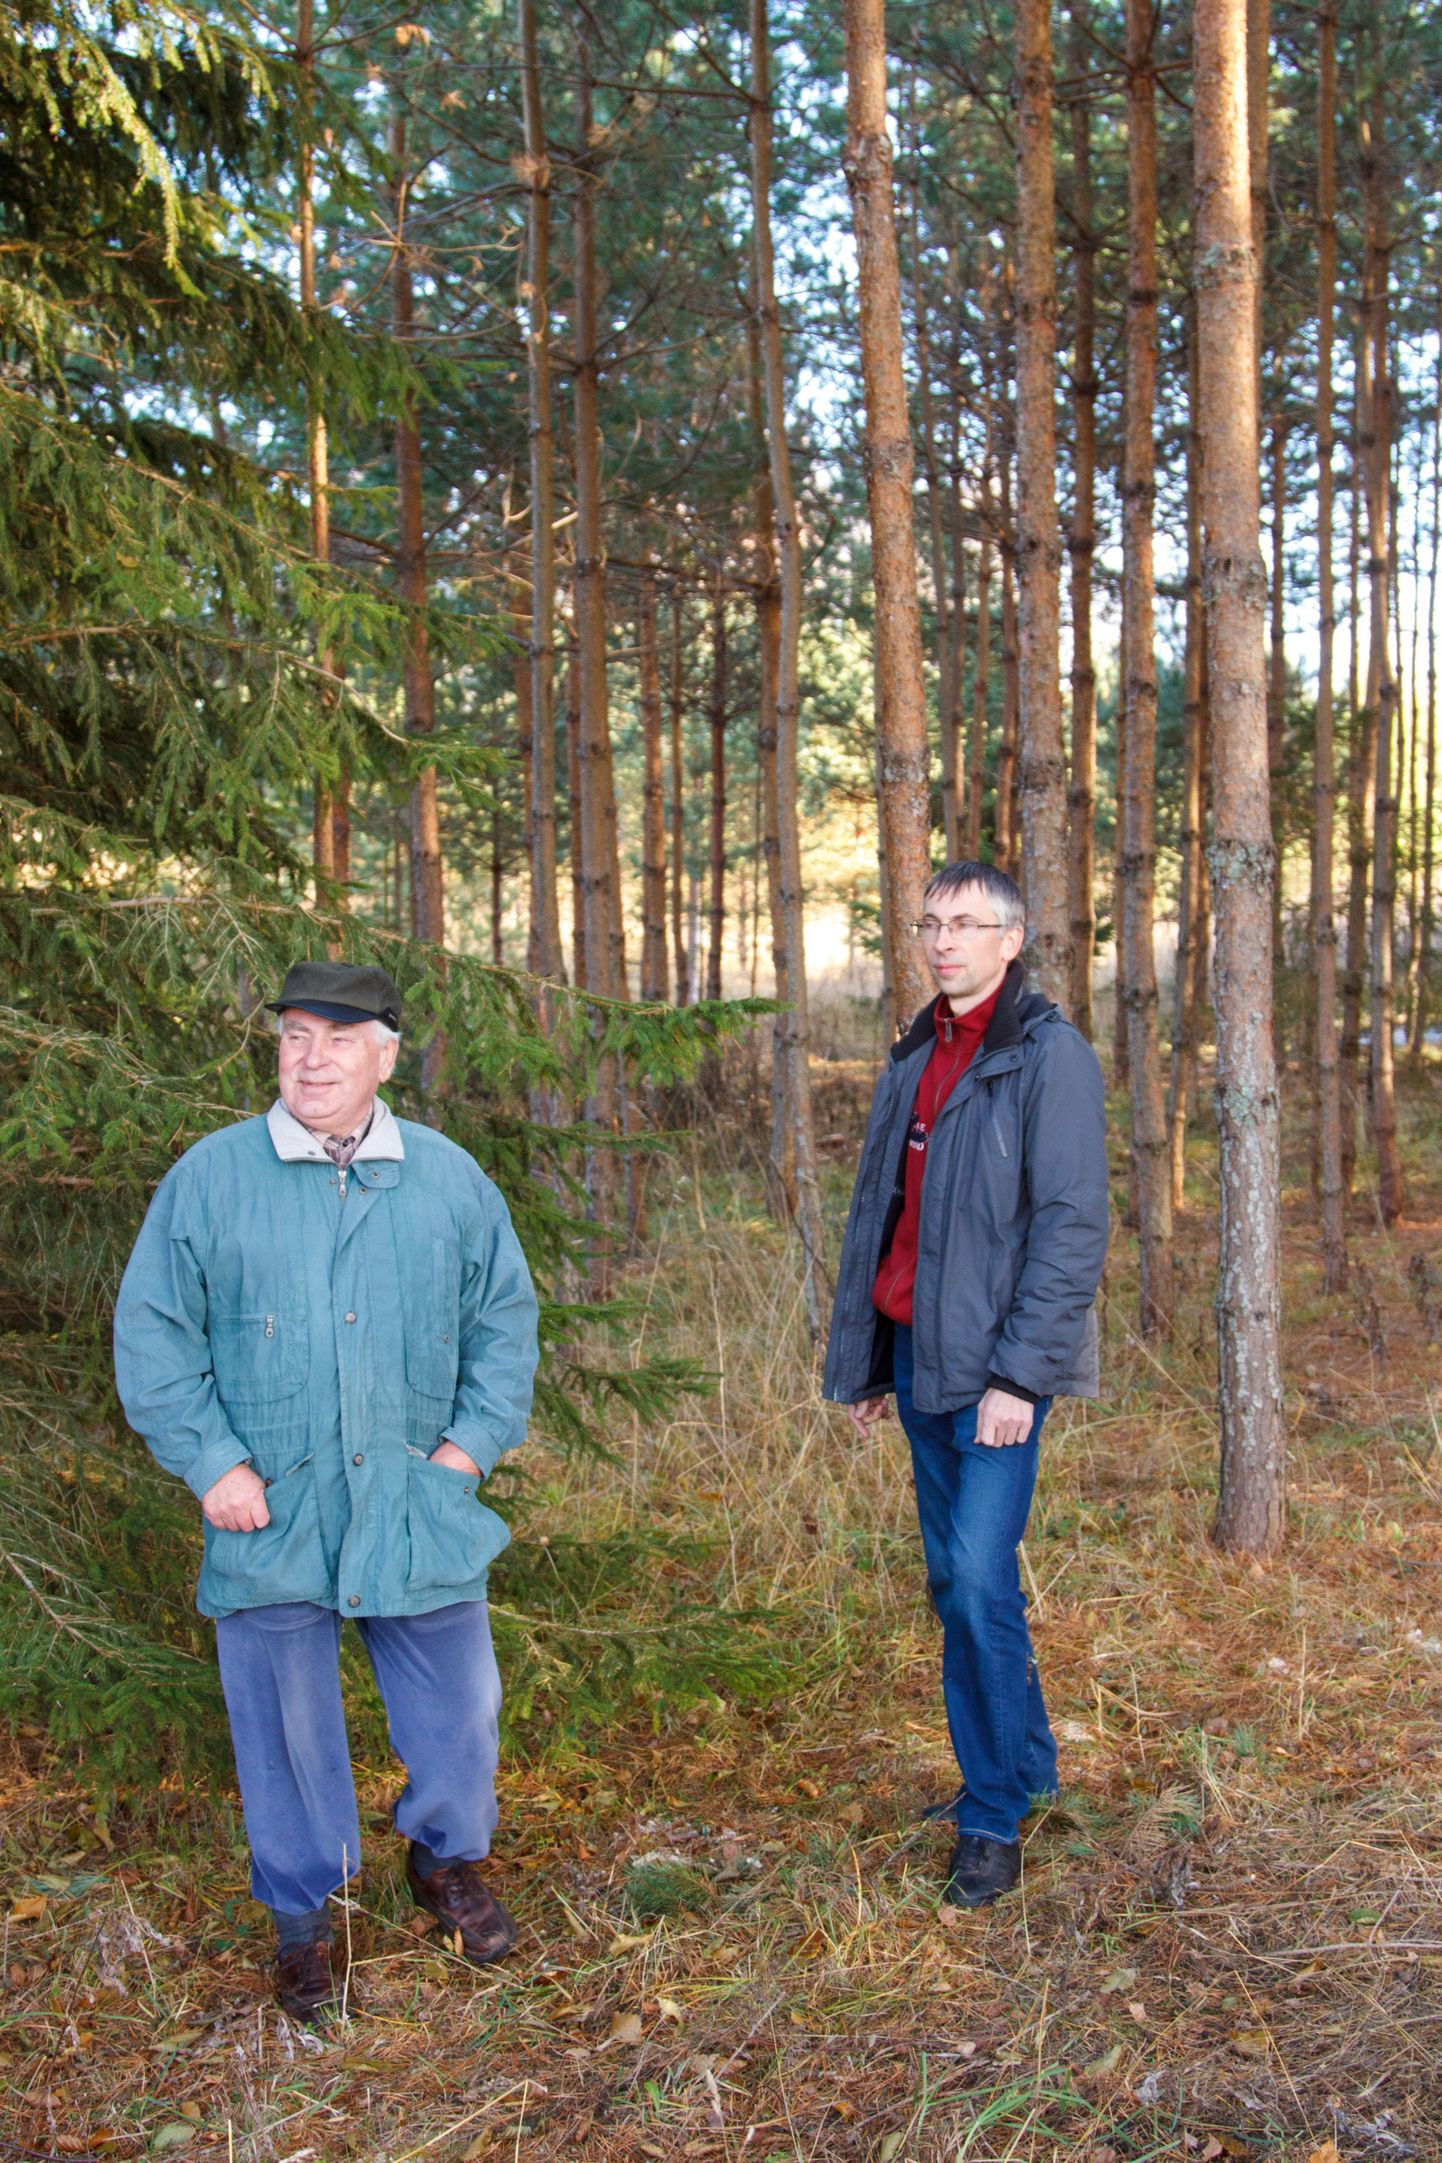 Nõmme talu peremees Mart Leosk (vasakul) on rahul, et poeg Maido on otsustanud vanemate tegemistest eeskuju võtta ja metsandusse sukelduda.